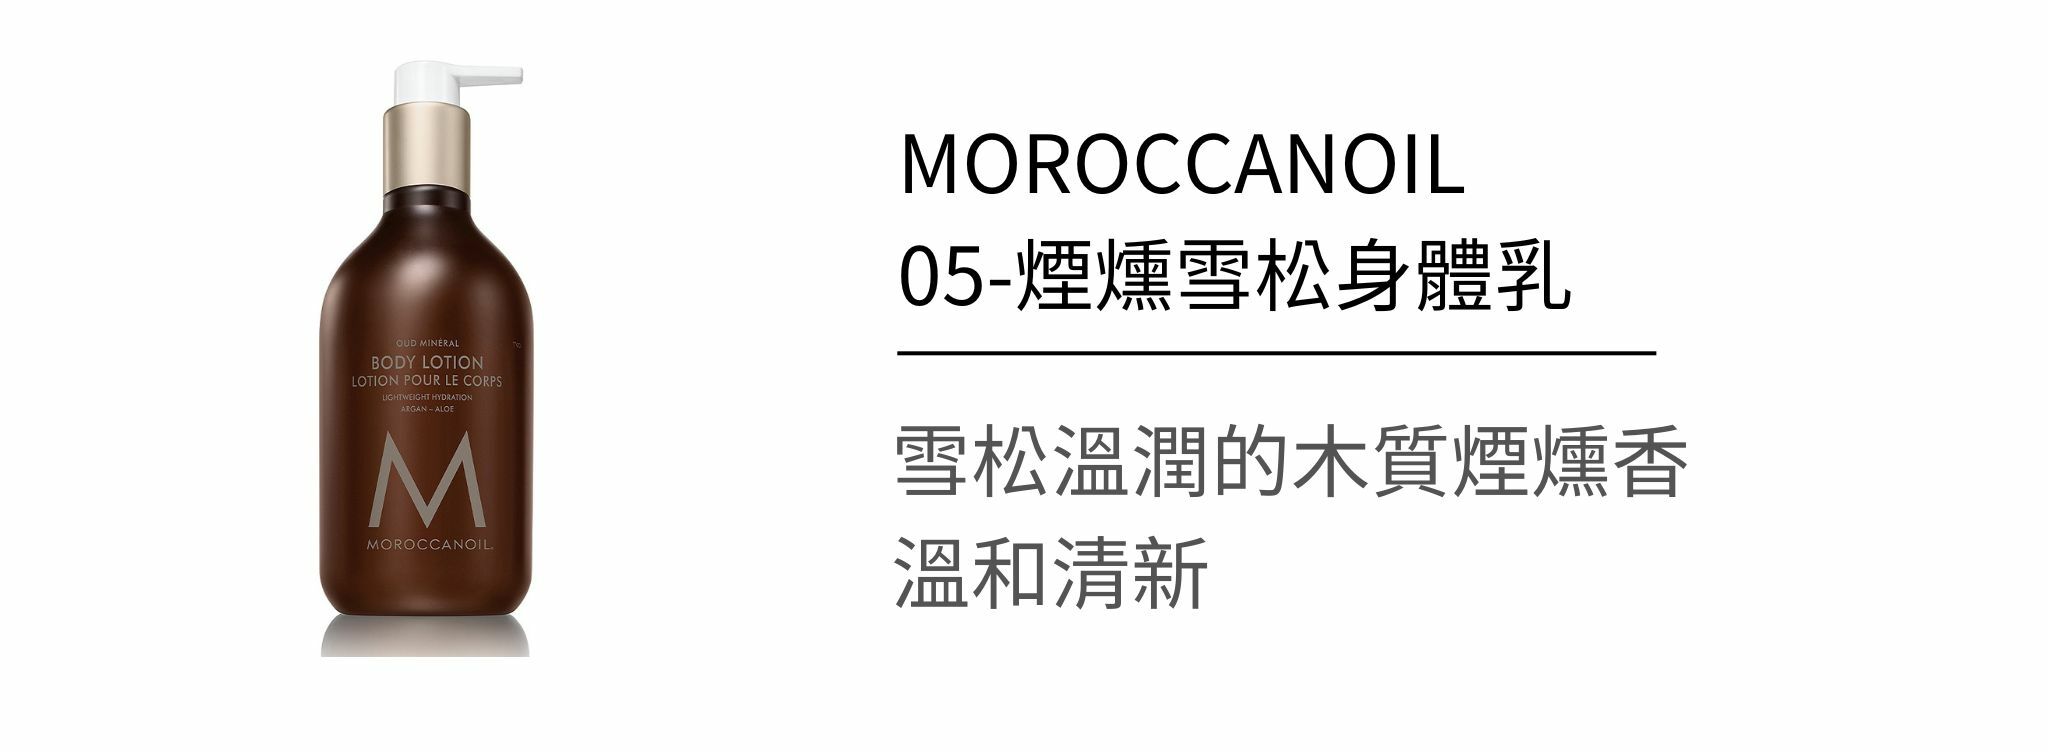 摩洛哥優油如何挑選？網紅推薦的原因究竟是..摩洛哥髮品詳細介紹